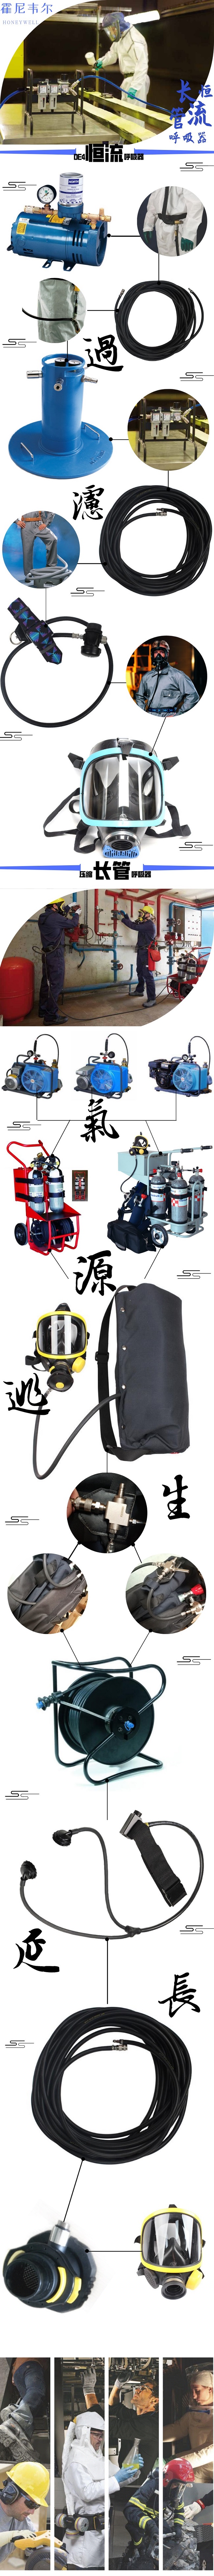 正压式空气呼吸器 长管空气呼吸器 长管式空气呼吸器 移动式长管空气呼吸器 正压式长管空气呼吸器